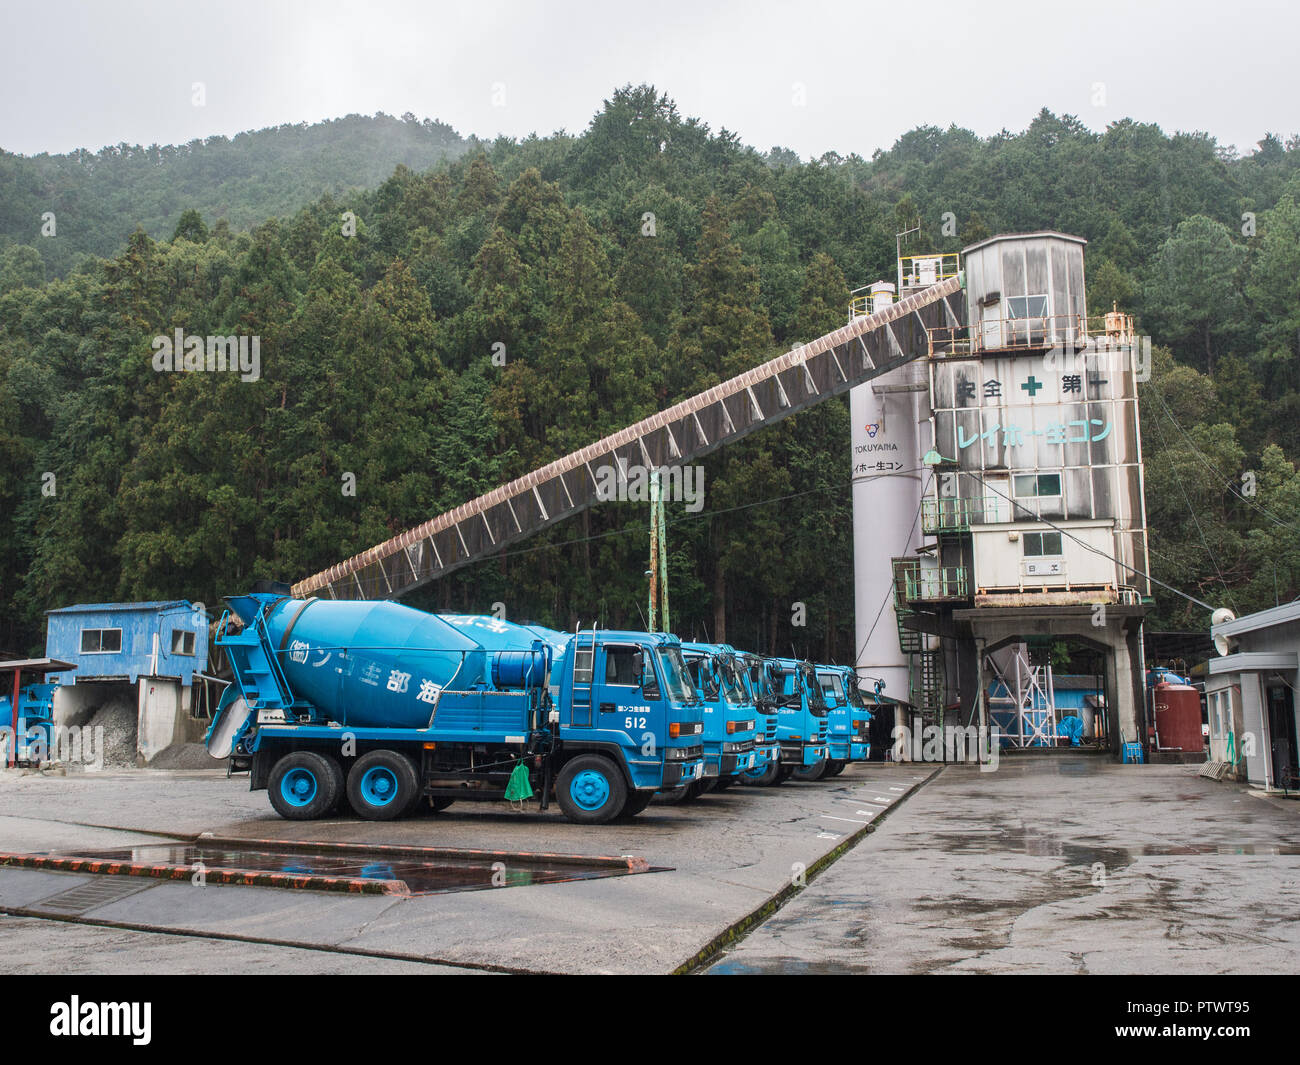 Tokuyama concretbatching plant, Kannoura, Kochi, Japan Stock Photo